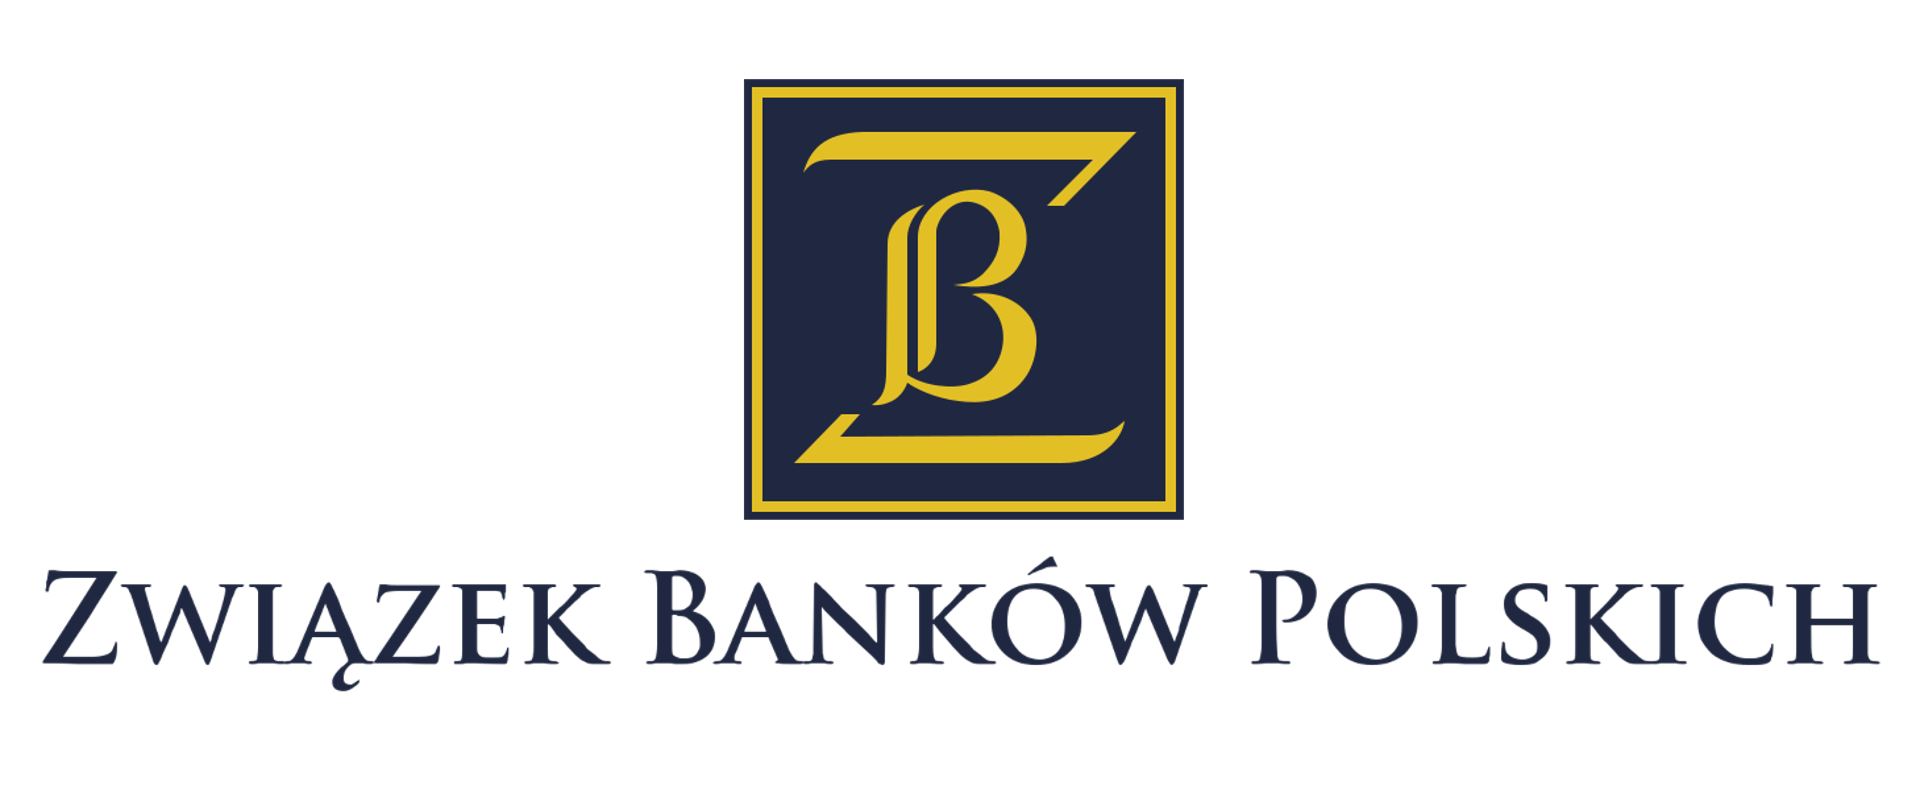 Logo przedstawia logotyp litera B wewnątrz litery Z. Obie litery znajdują się w kwadratowym obramowaniu w kolorze złotym, na granatowym tle. Poniżej napis Związek Banków Polskich.